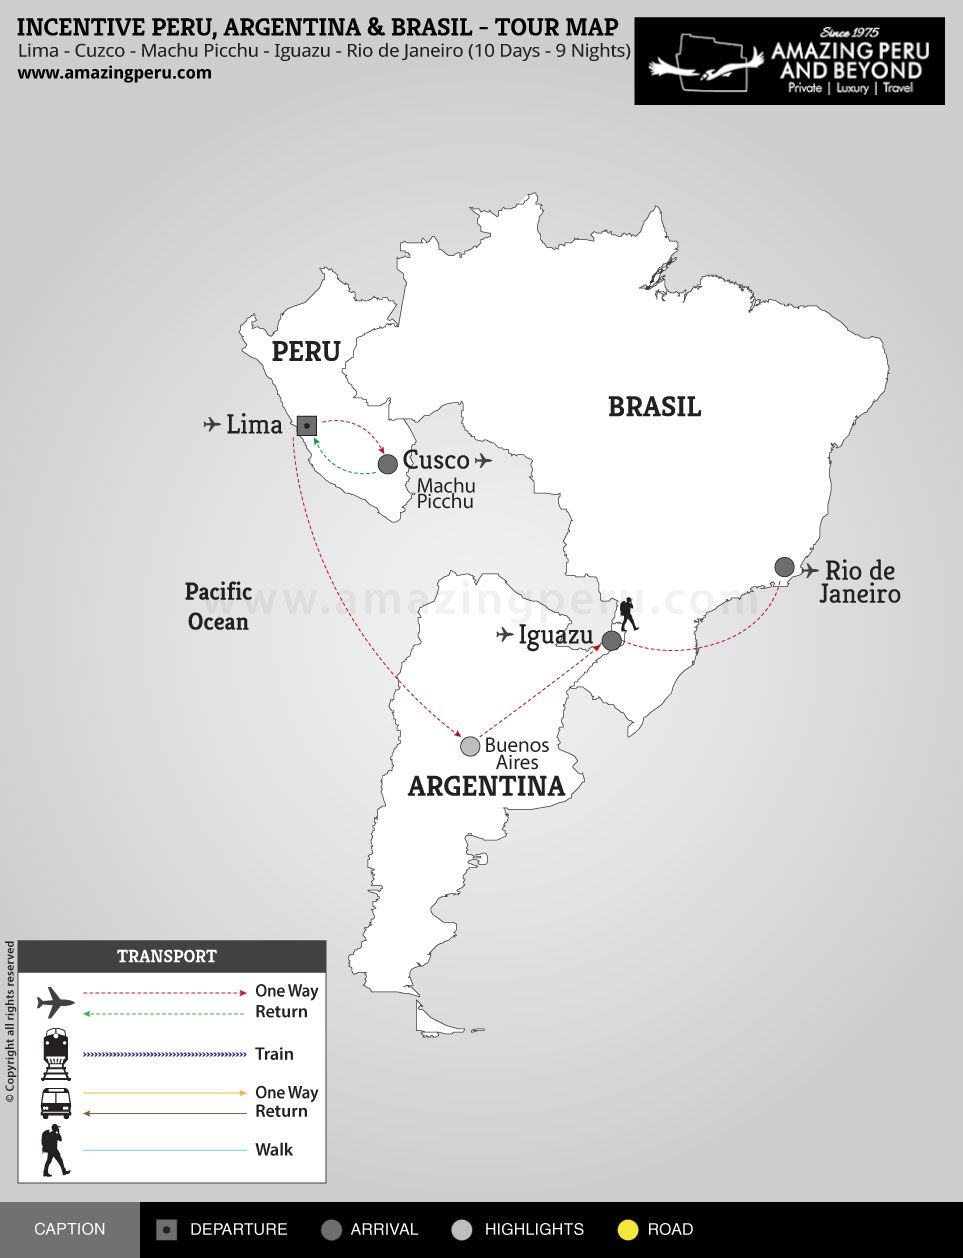 Incentive Peru, Argentina & Brazil Tour - 10 days / 9 nights.